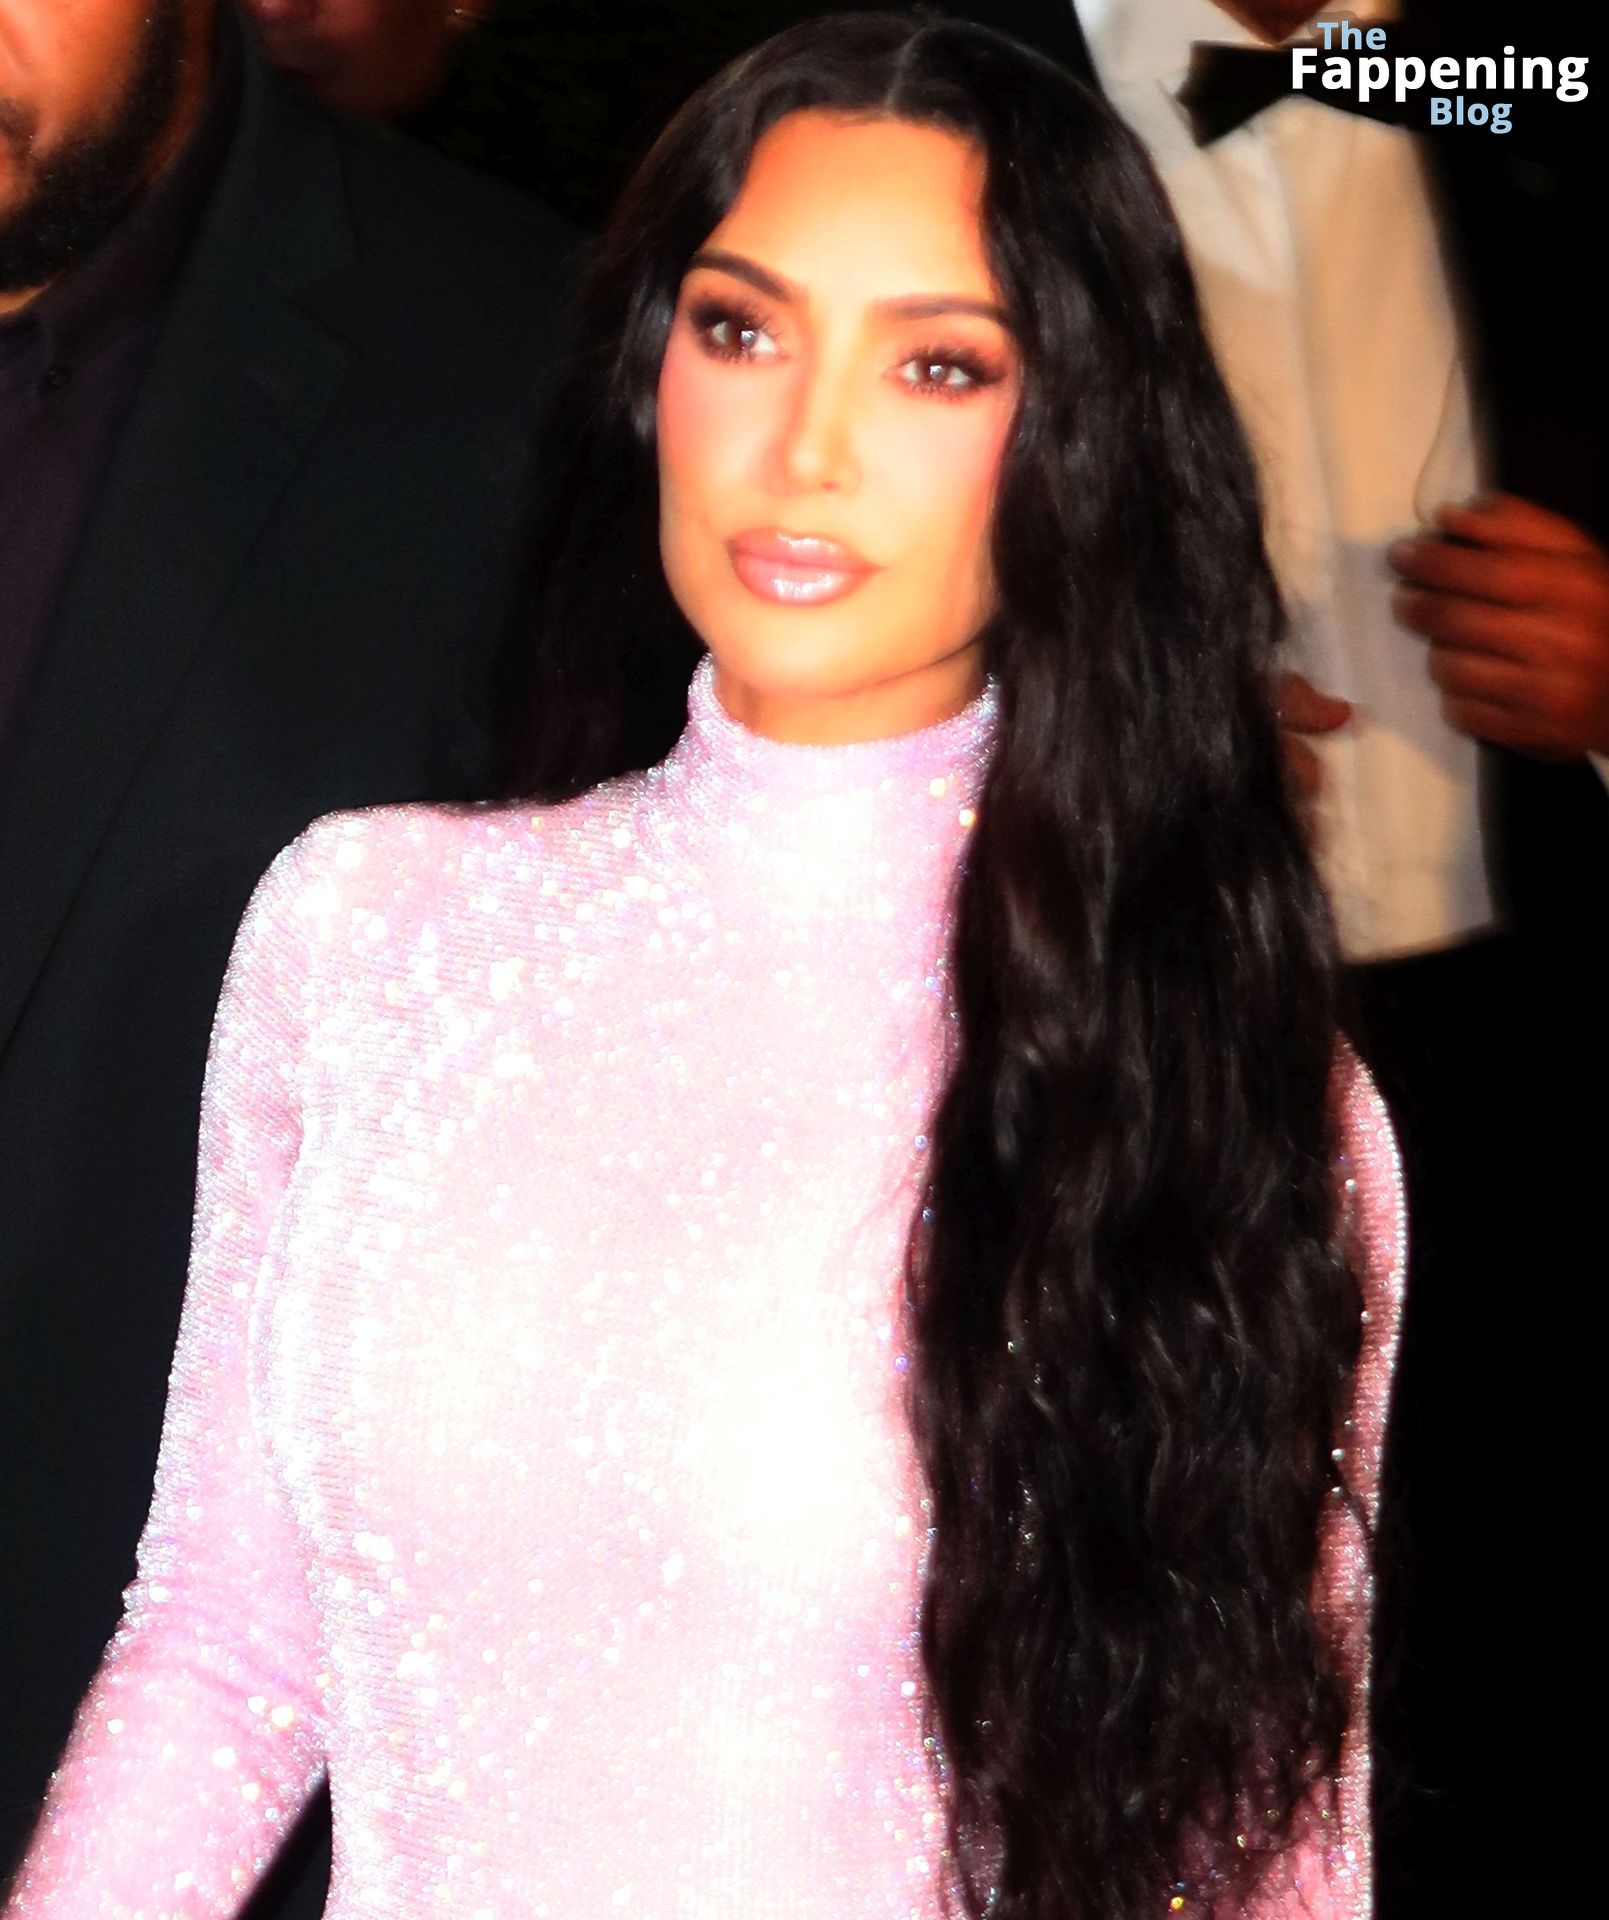 Kim-Kardashian-Sexy-99-The-Fappening-Blog.jpg